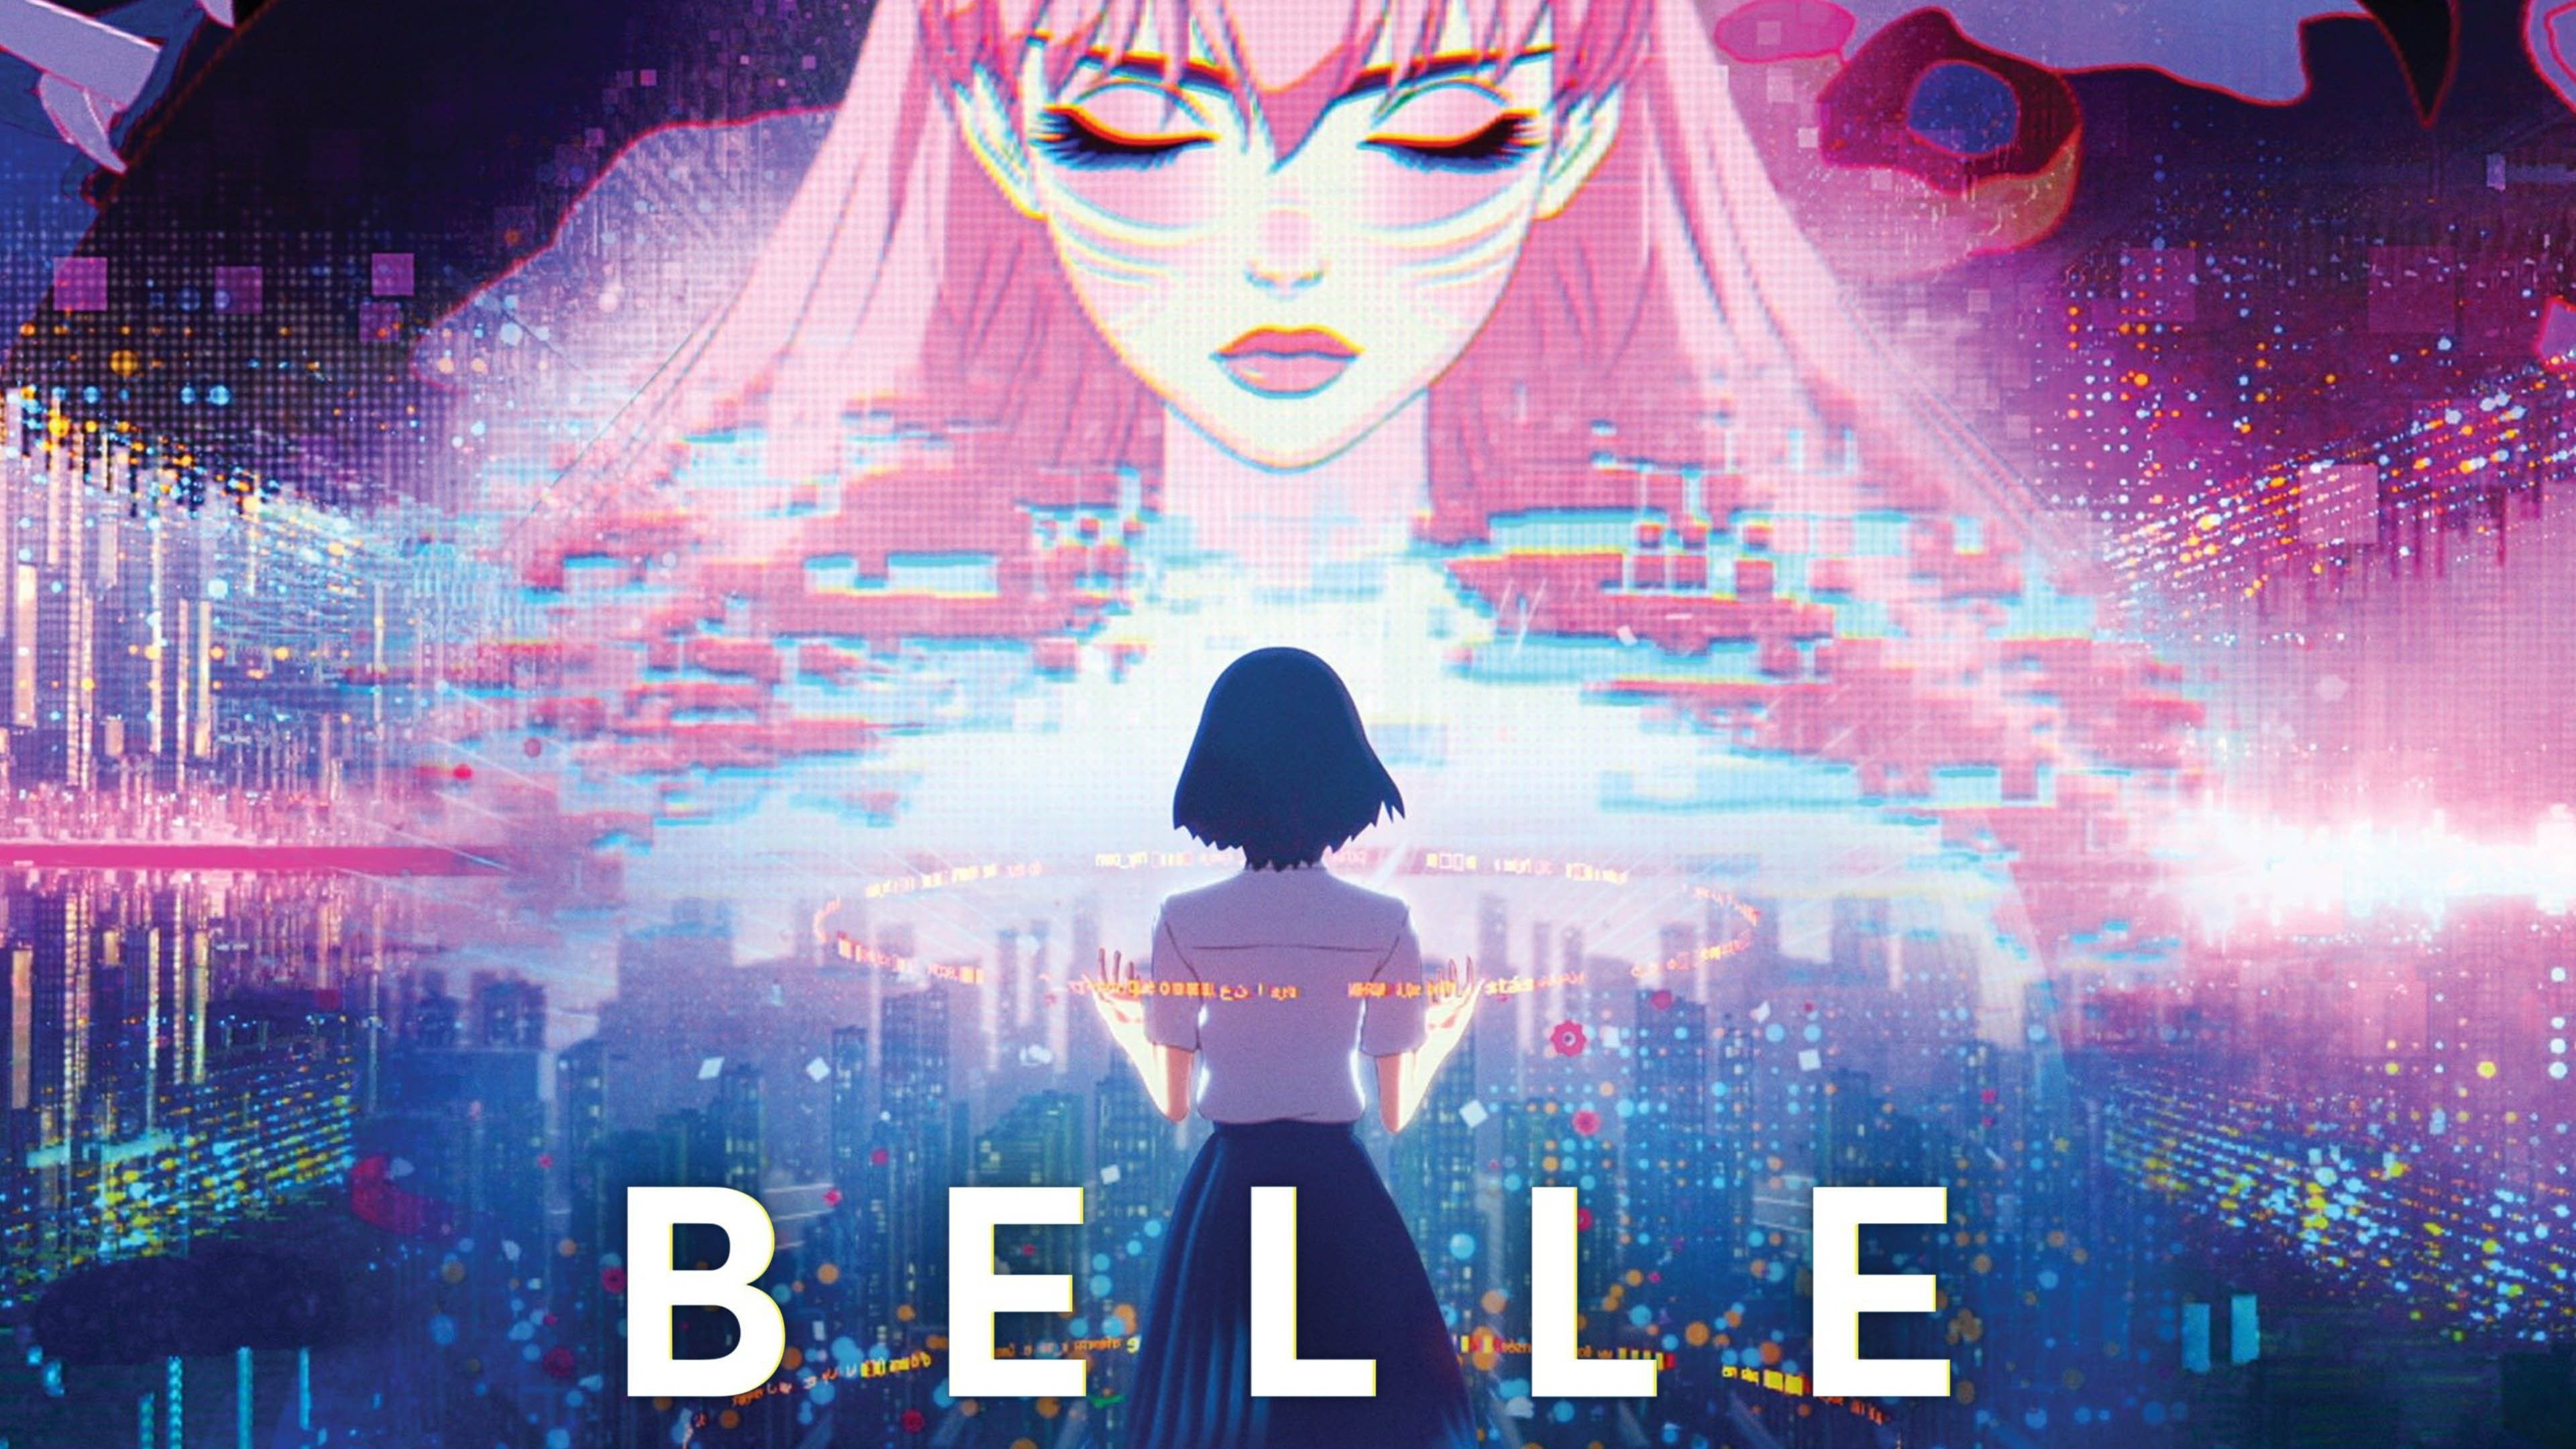 Belle (2021) (Blu-ray, 2021) 826663223019 | eBay